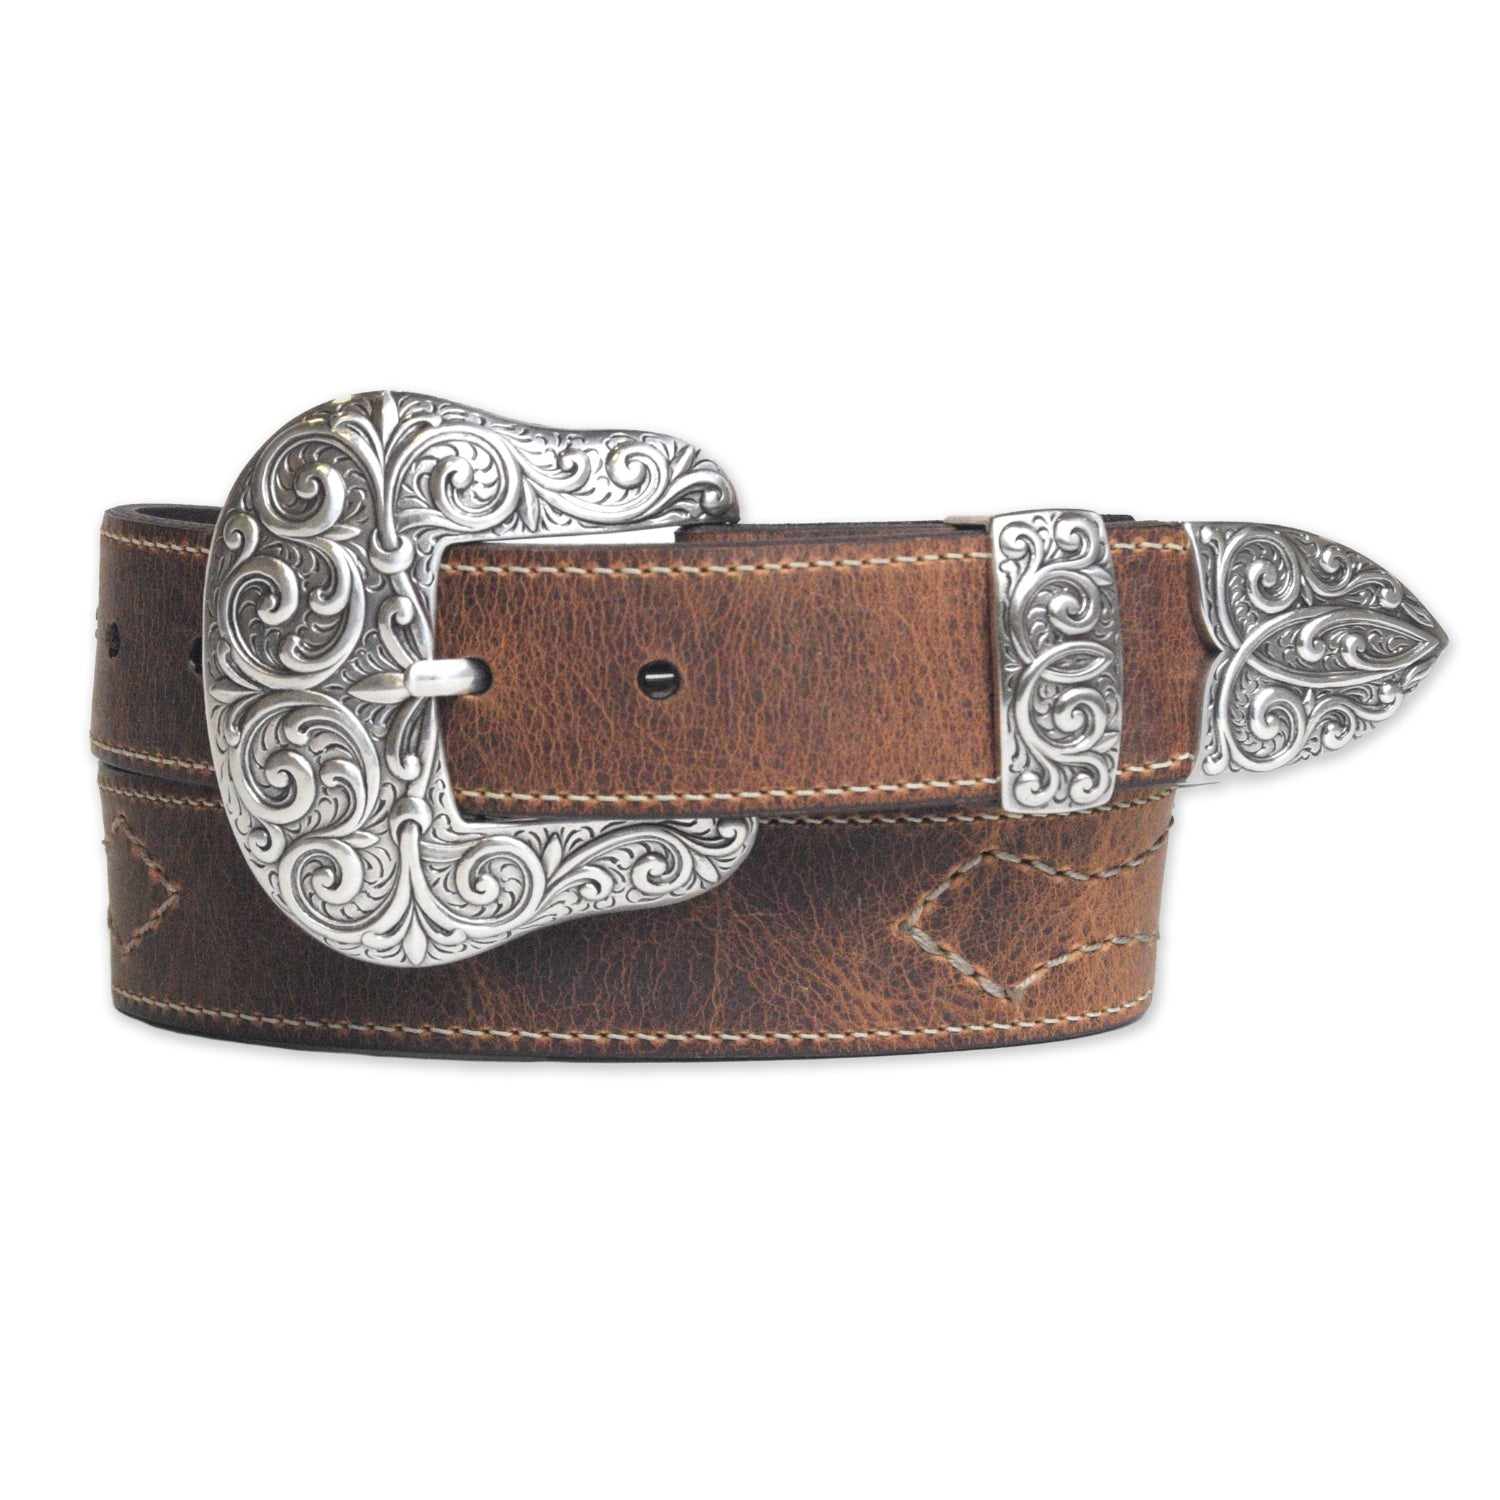 Women's western brown leather belt